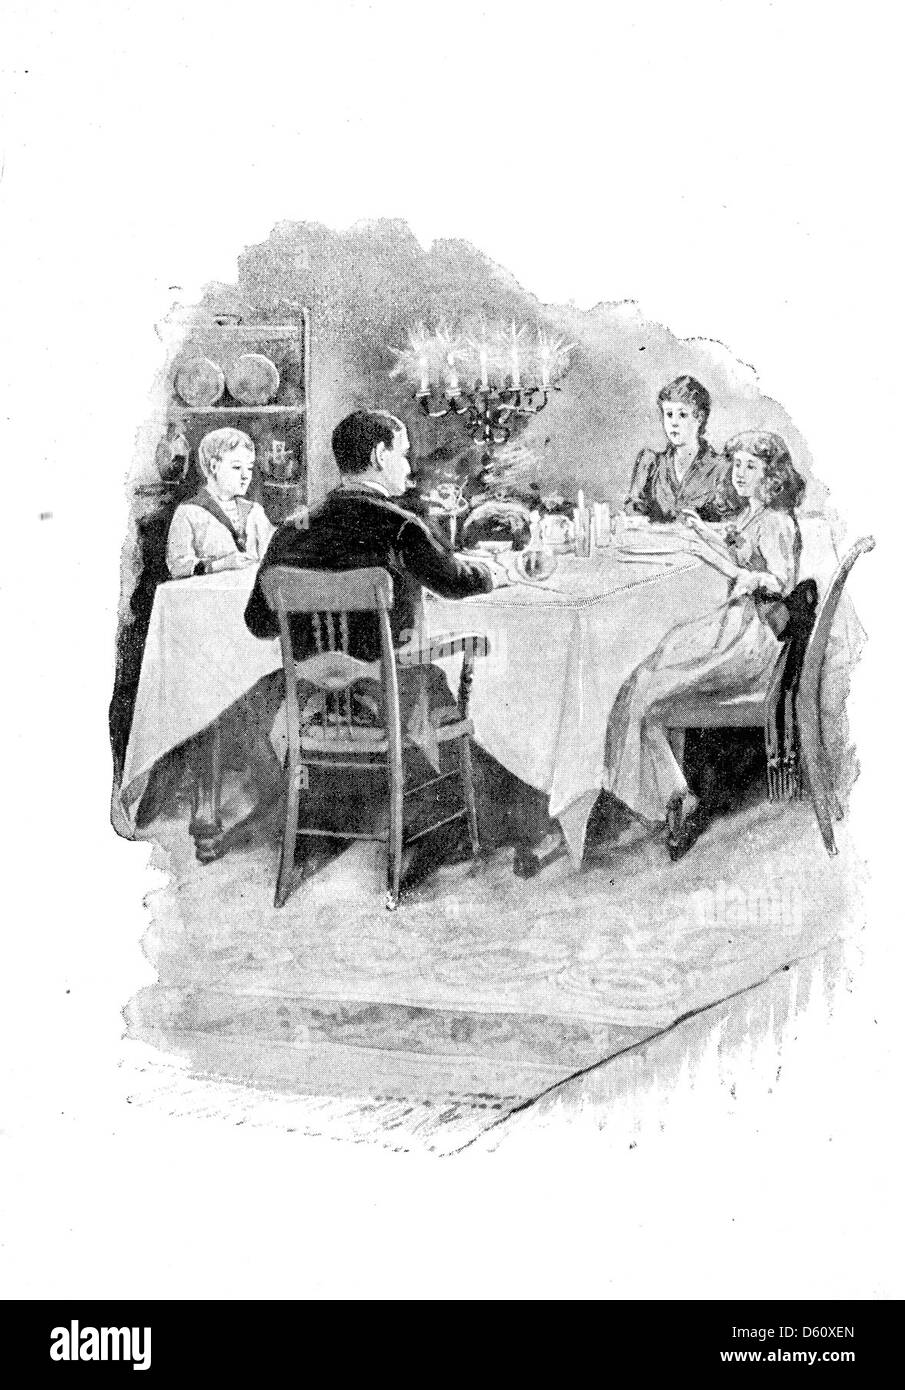 A Christmas greeting 1892 Stock Image